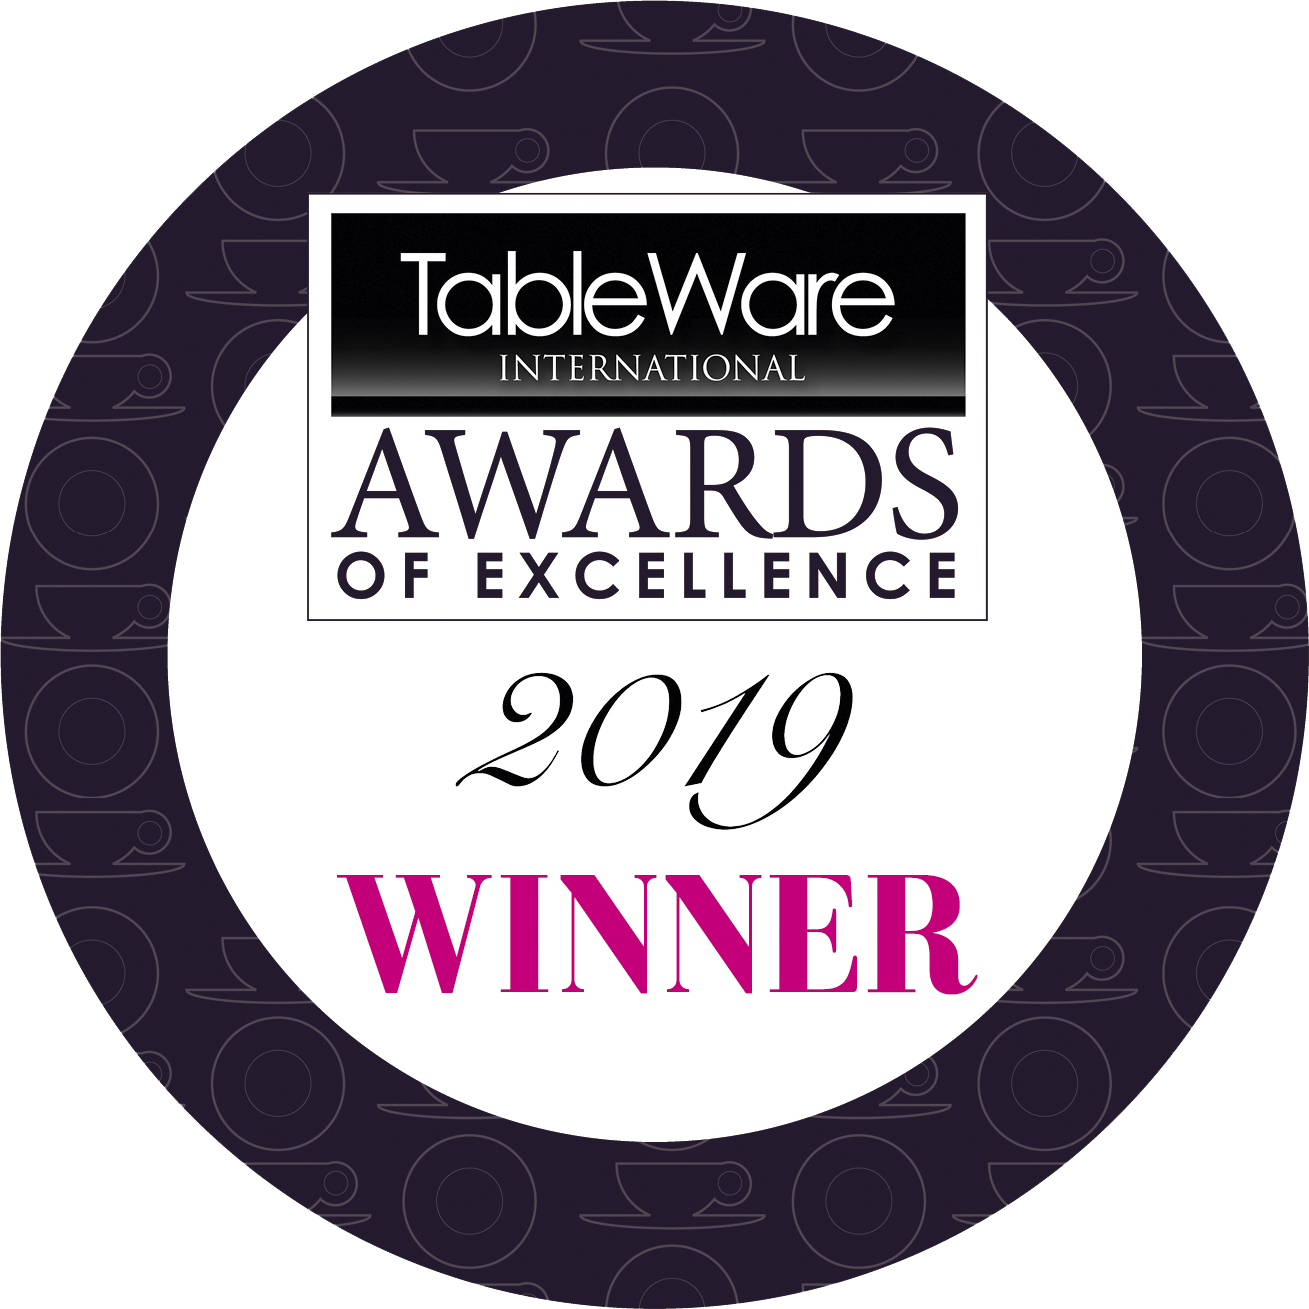 Winner 2019 Tableware International